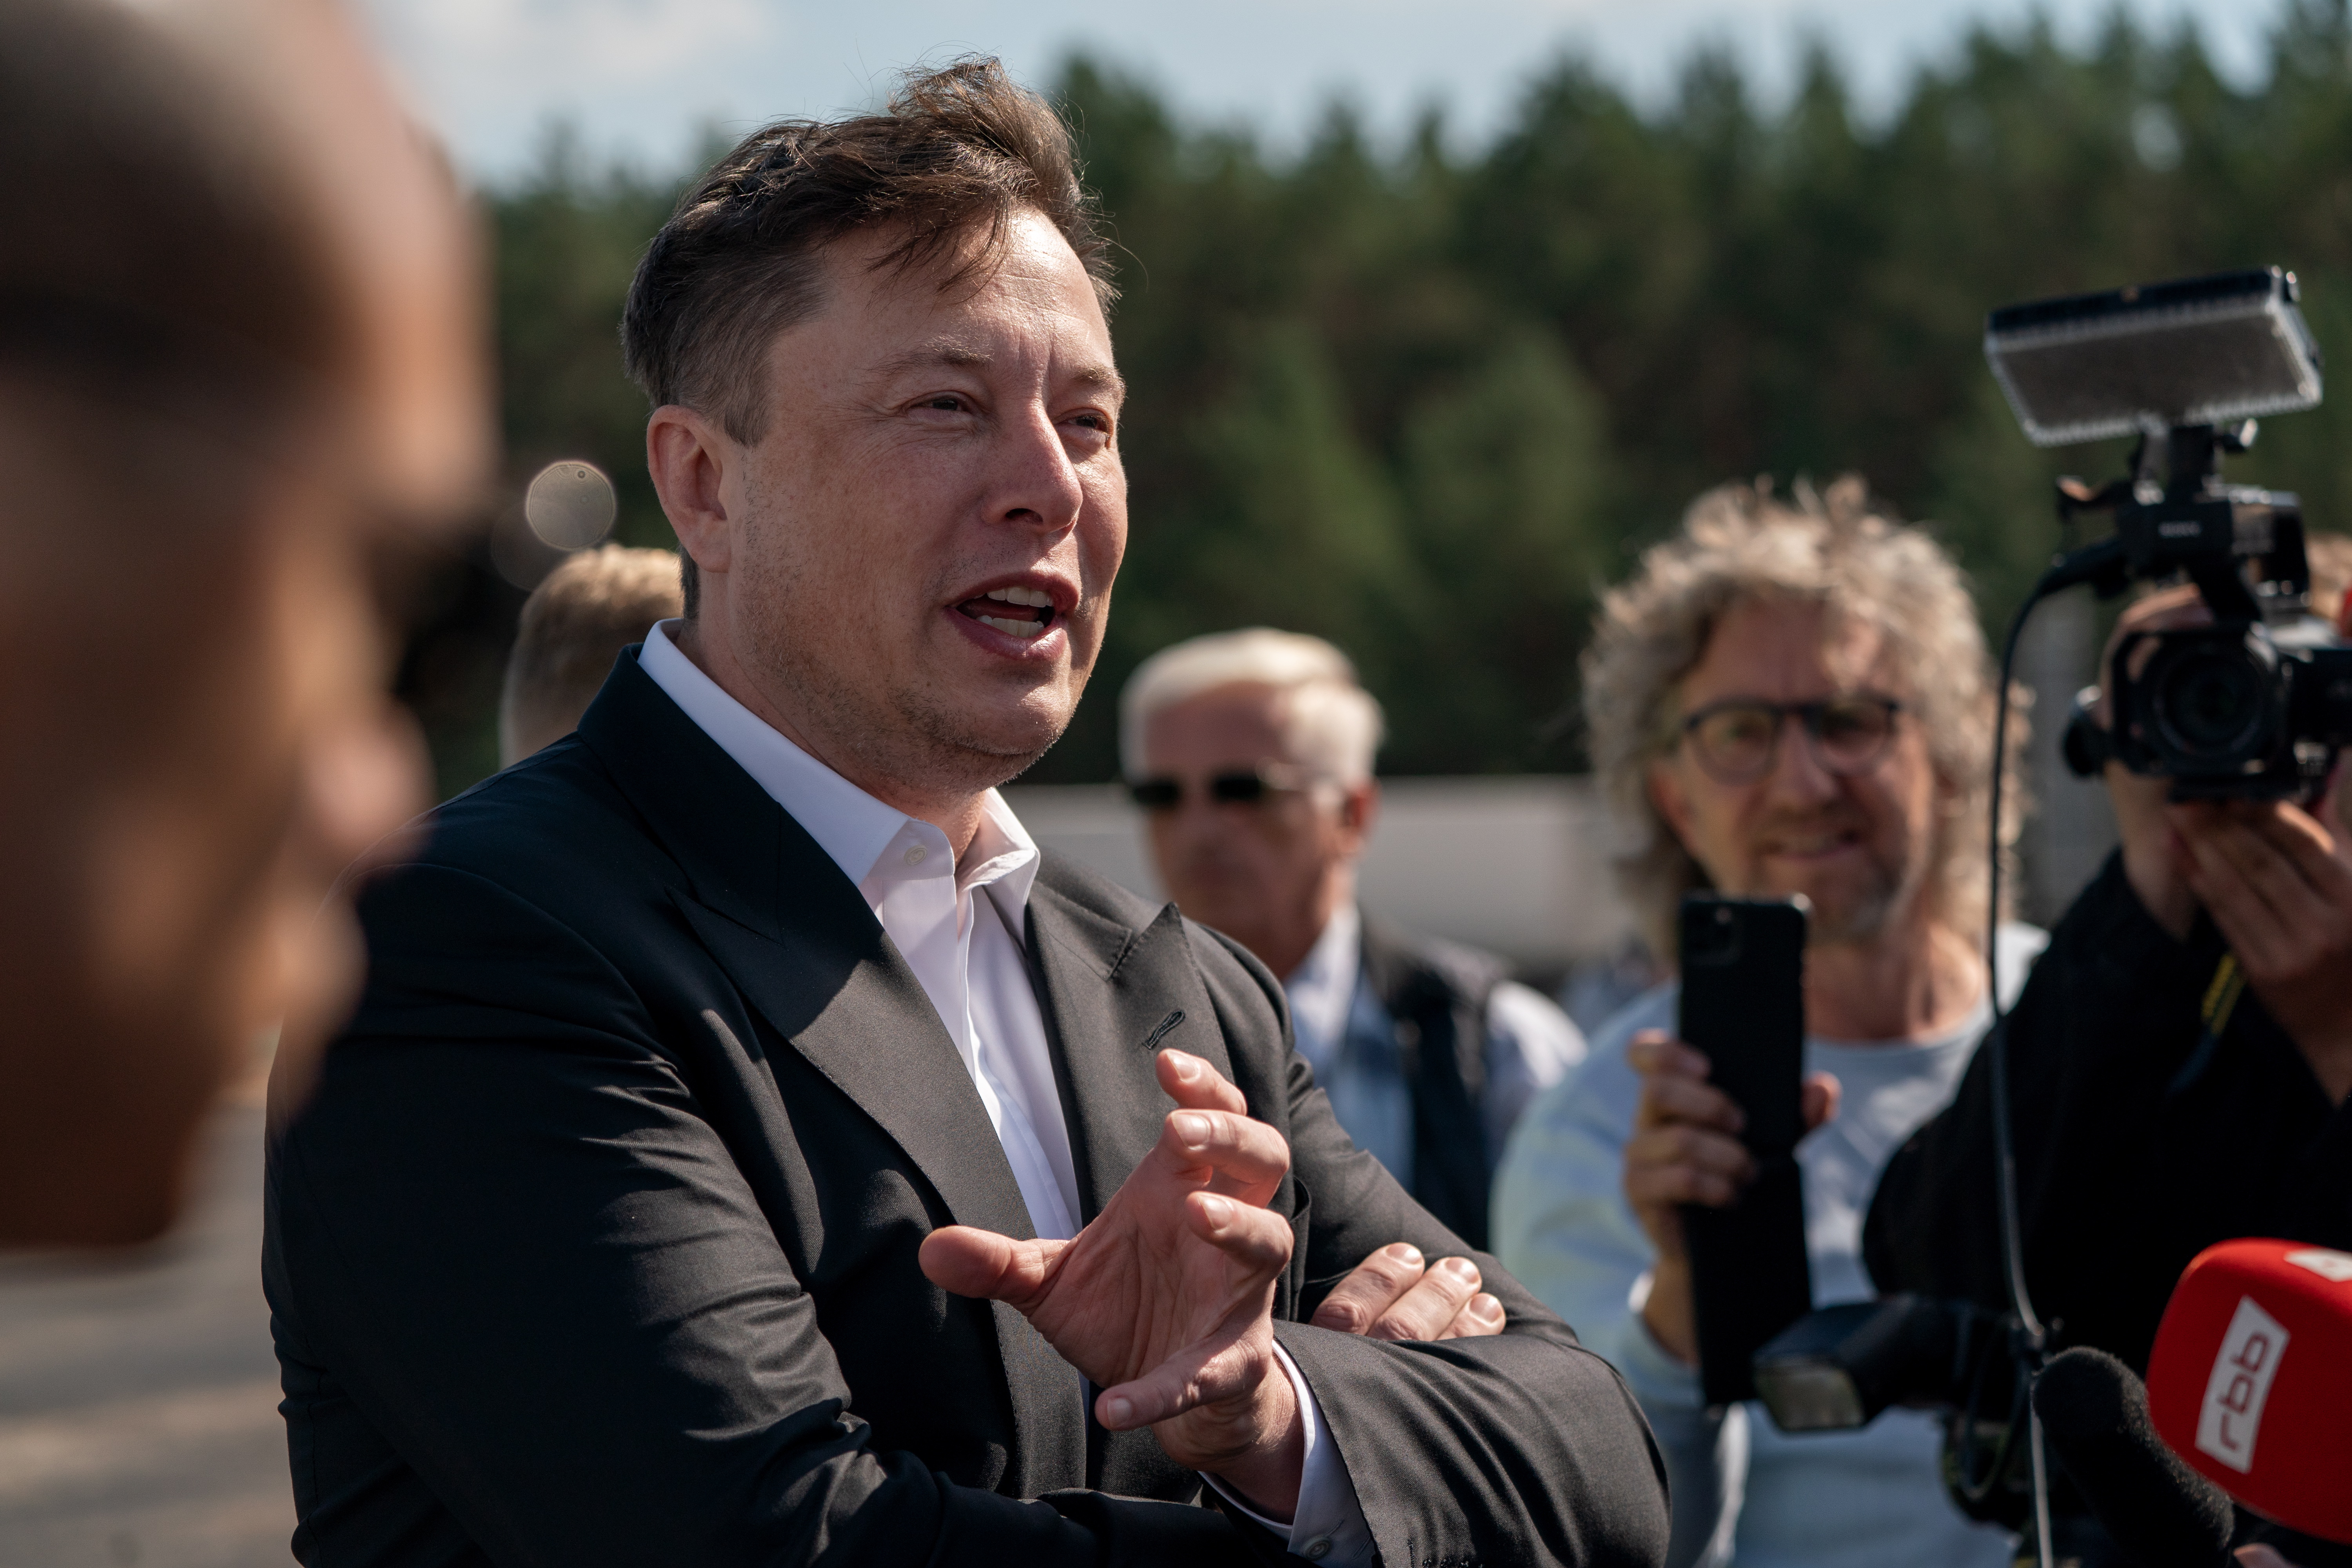 Dura advertencia: Musk exige a empleados de Tesla volver al trabajo presencial o marcharse